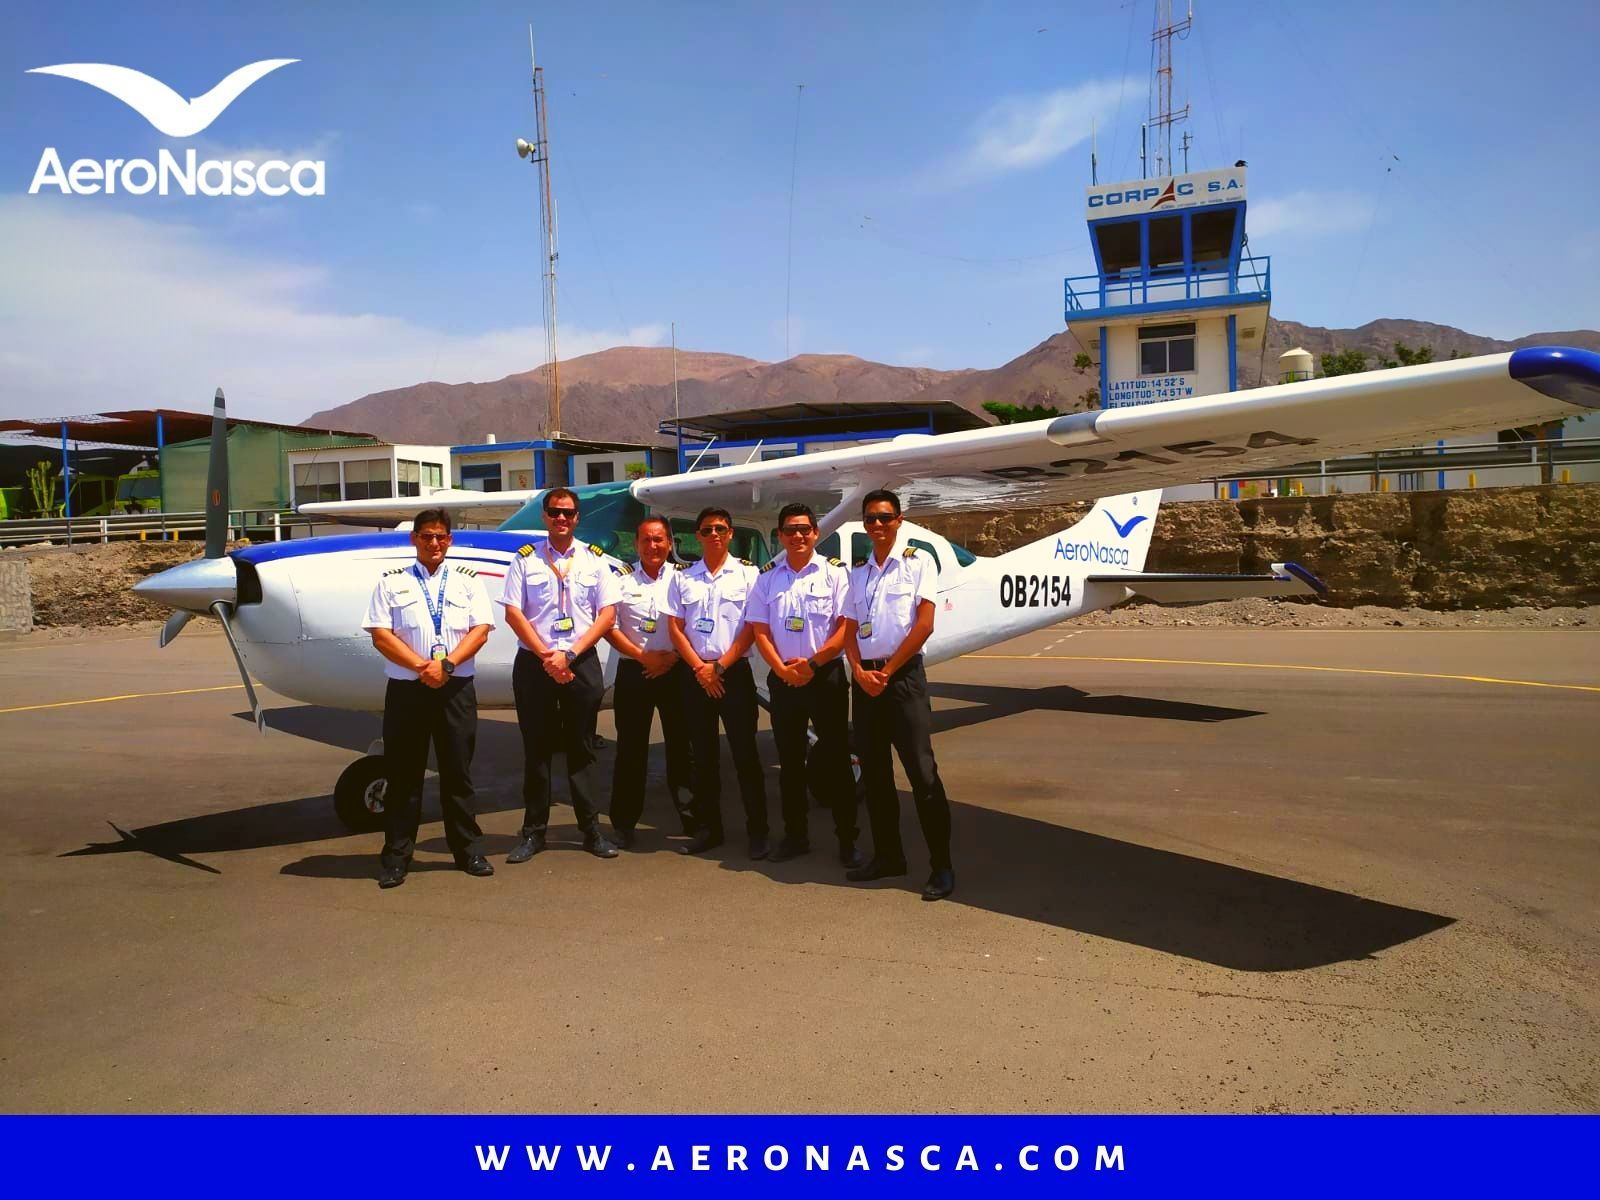 Pilotos de AeroNasca juntos a la AeroNave Cessna